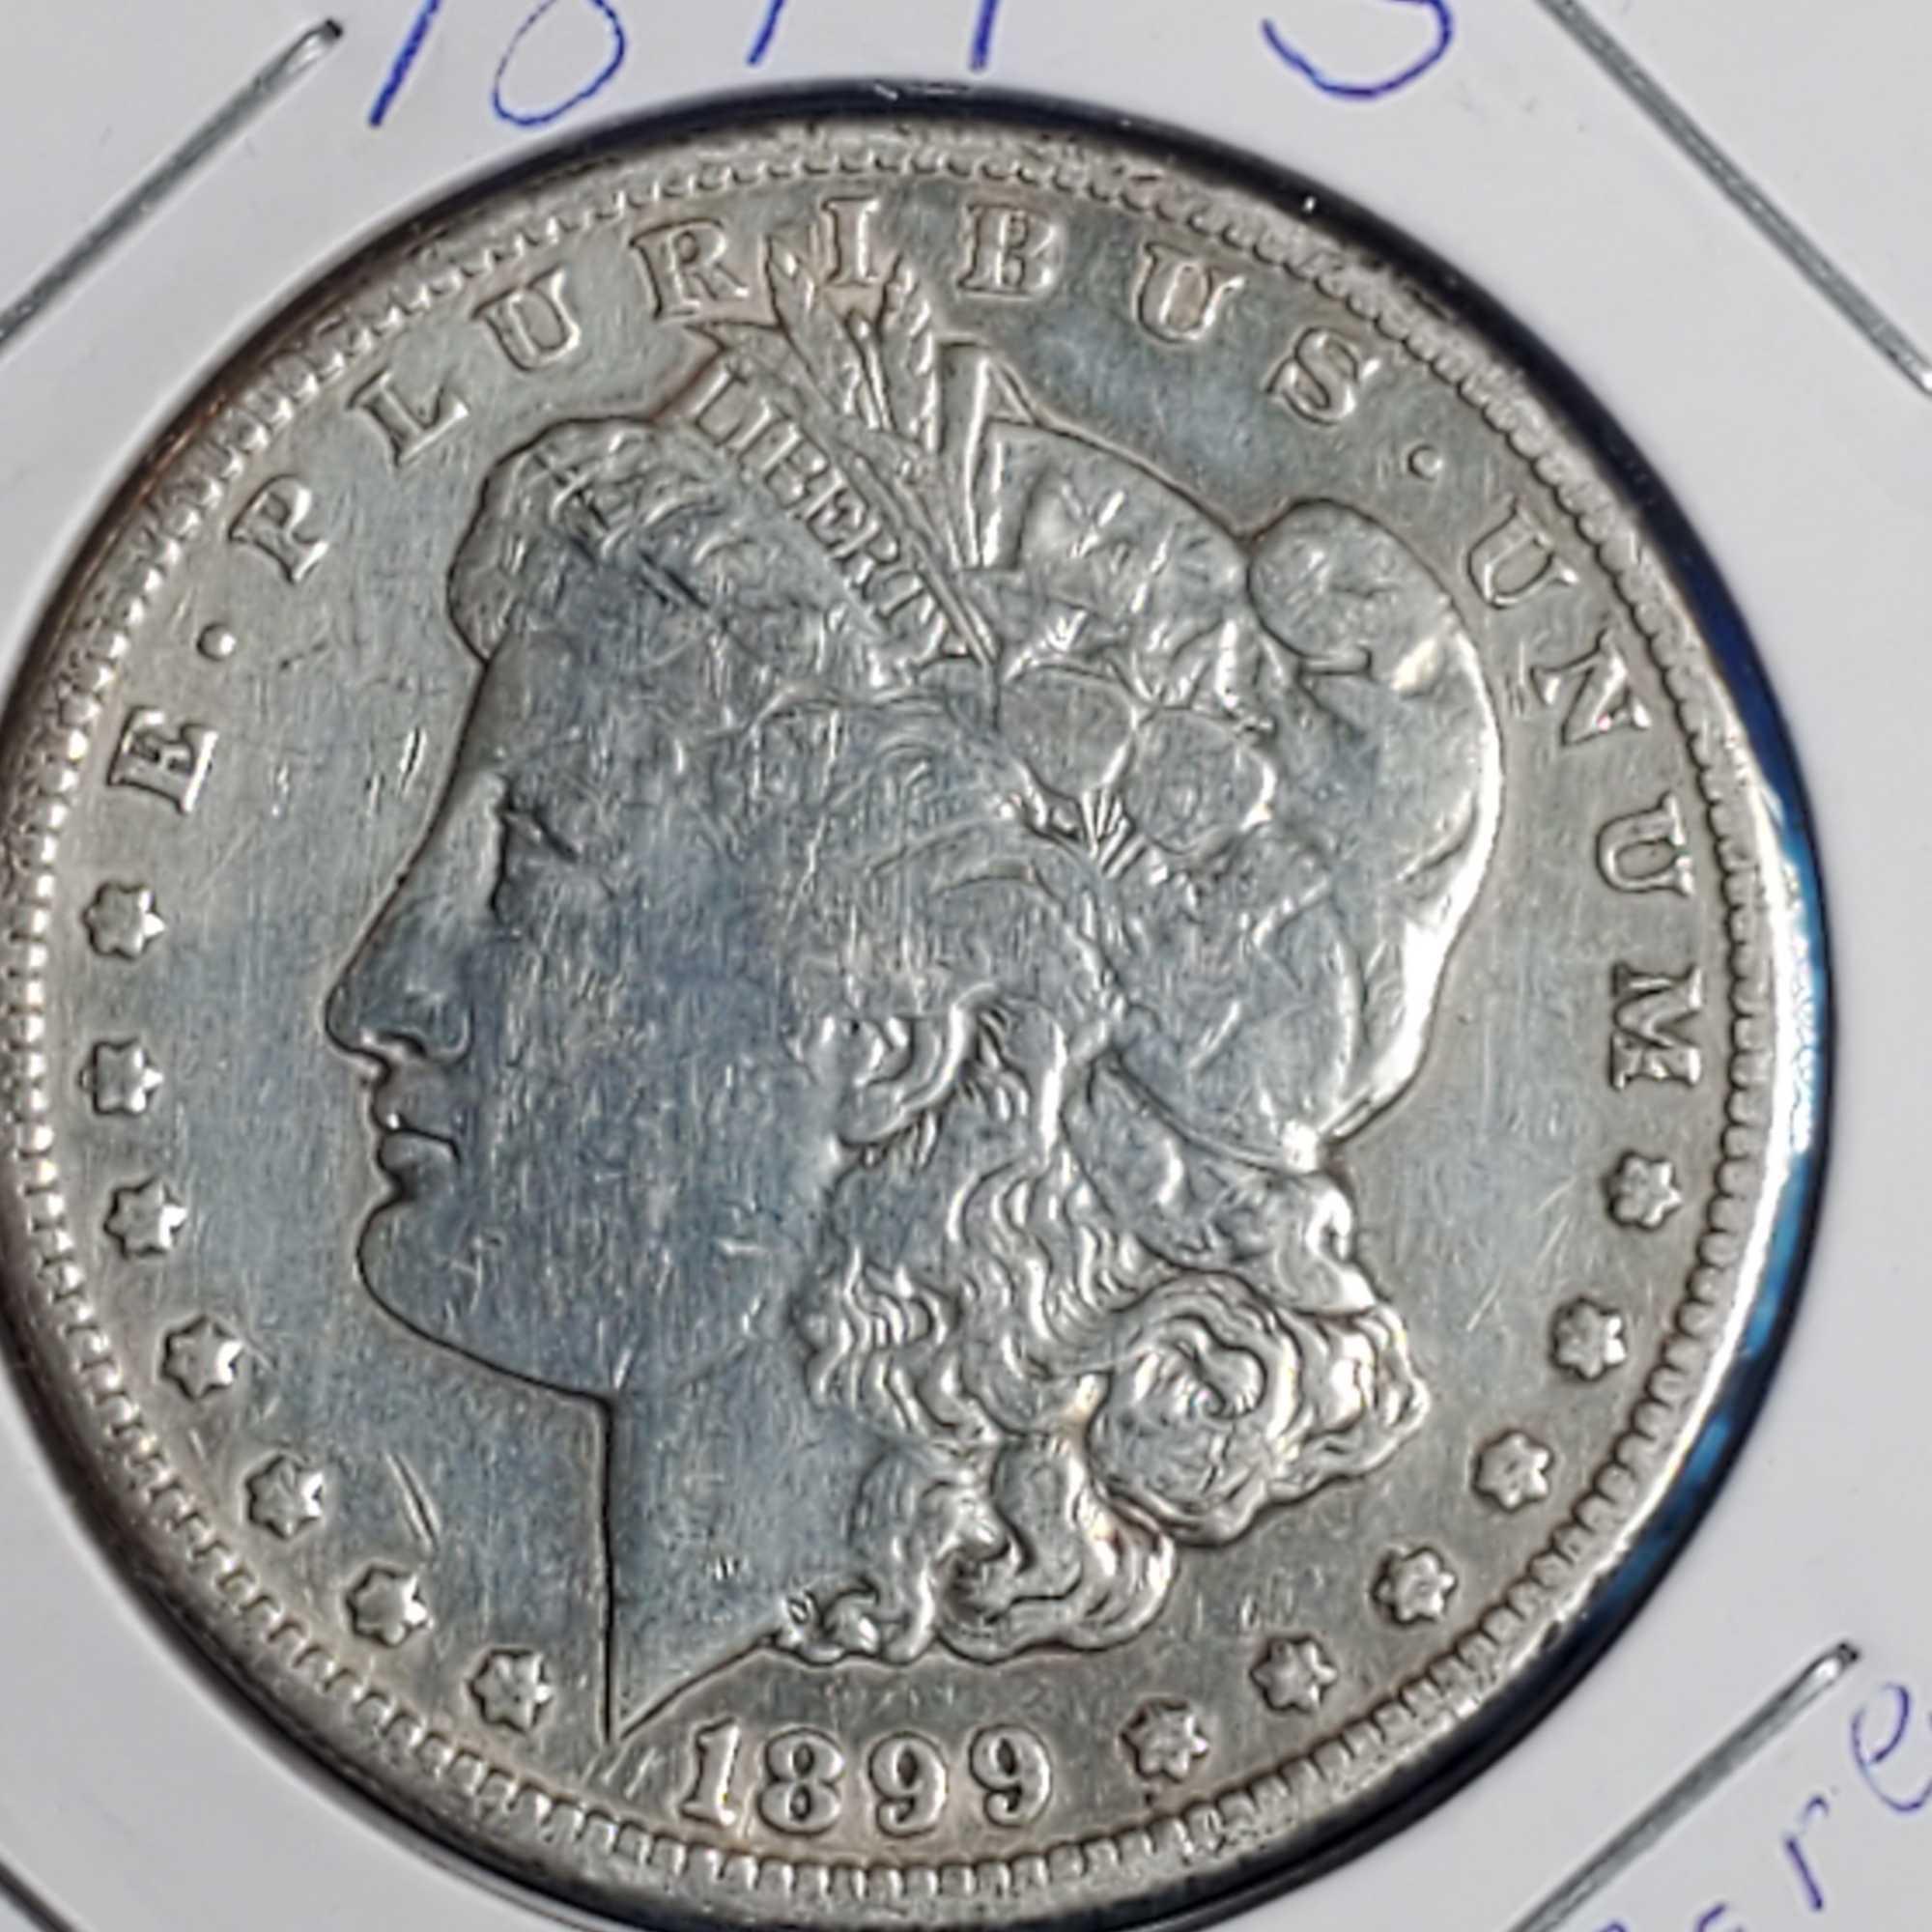 2 US Morgan Silver Dollars - 1880-O and 1899-S